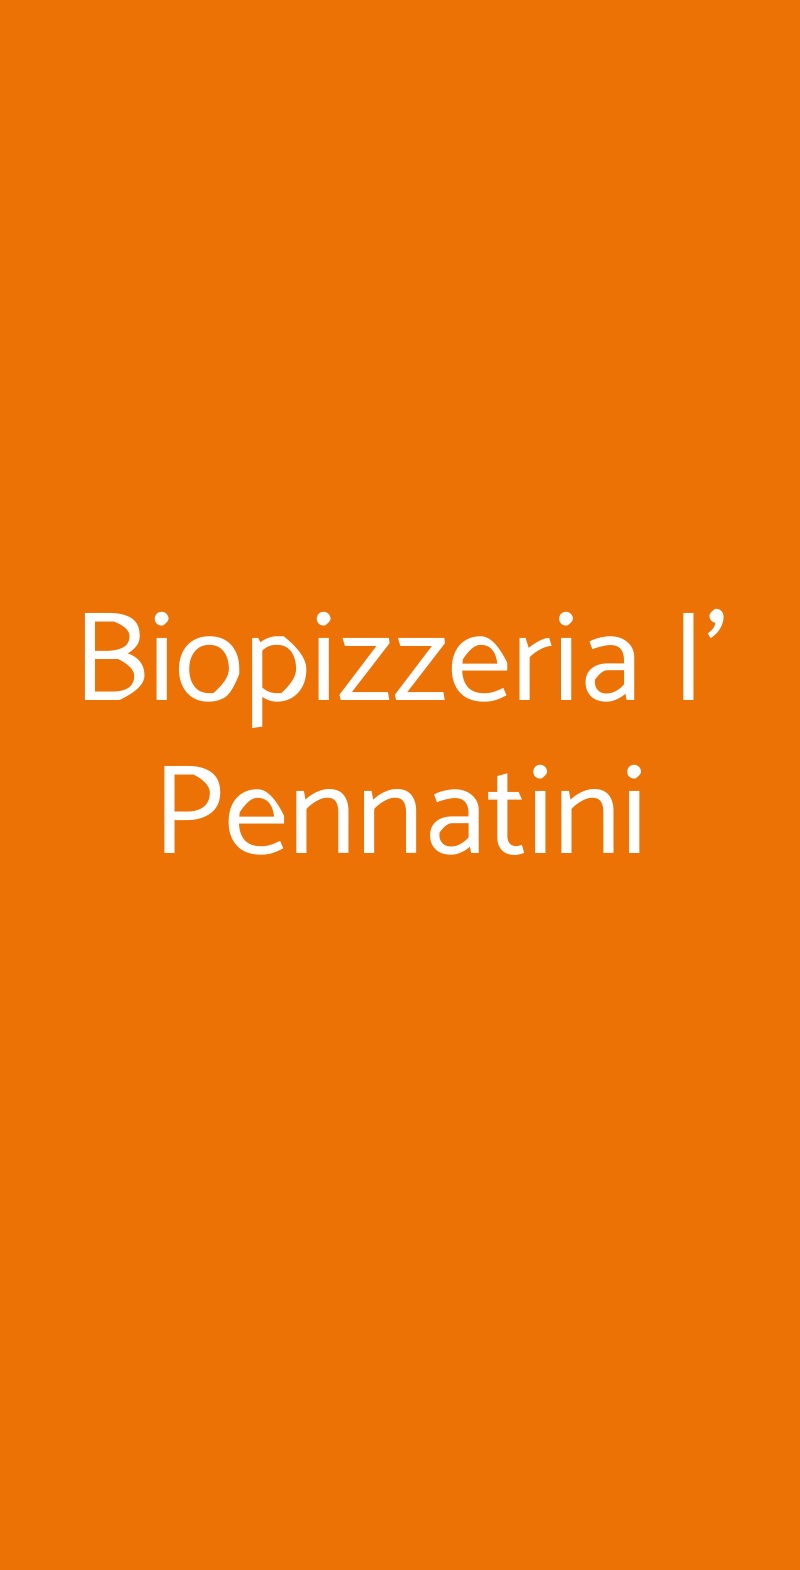 Biopizzeria I' Pennatini Firenze menù 1 pagina